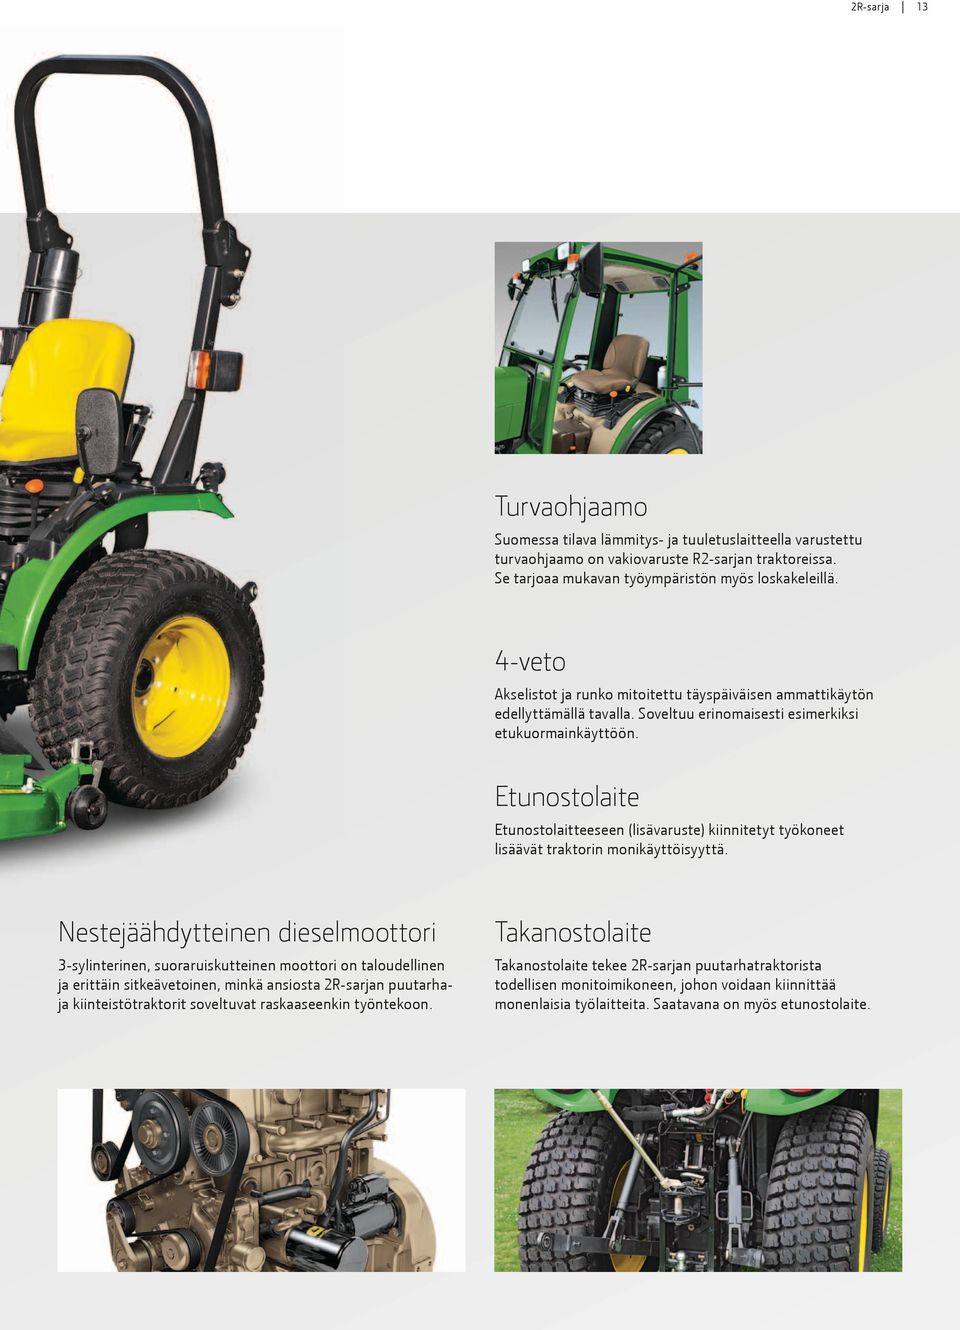 Etunostolaite Etunostolaitteeseen (lisävaruste) kiinnitetyt työkoneet lisäävät traktorin monikäyttöisyyttä.